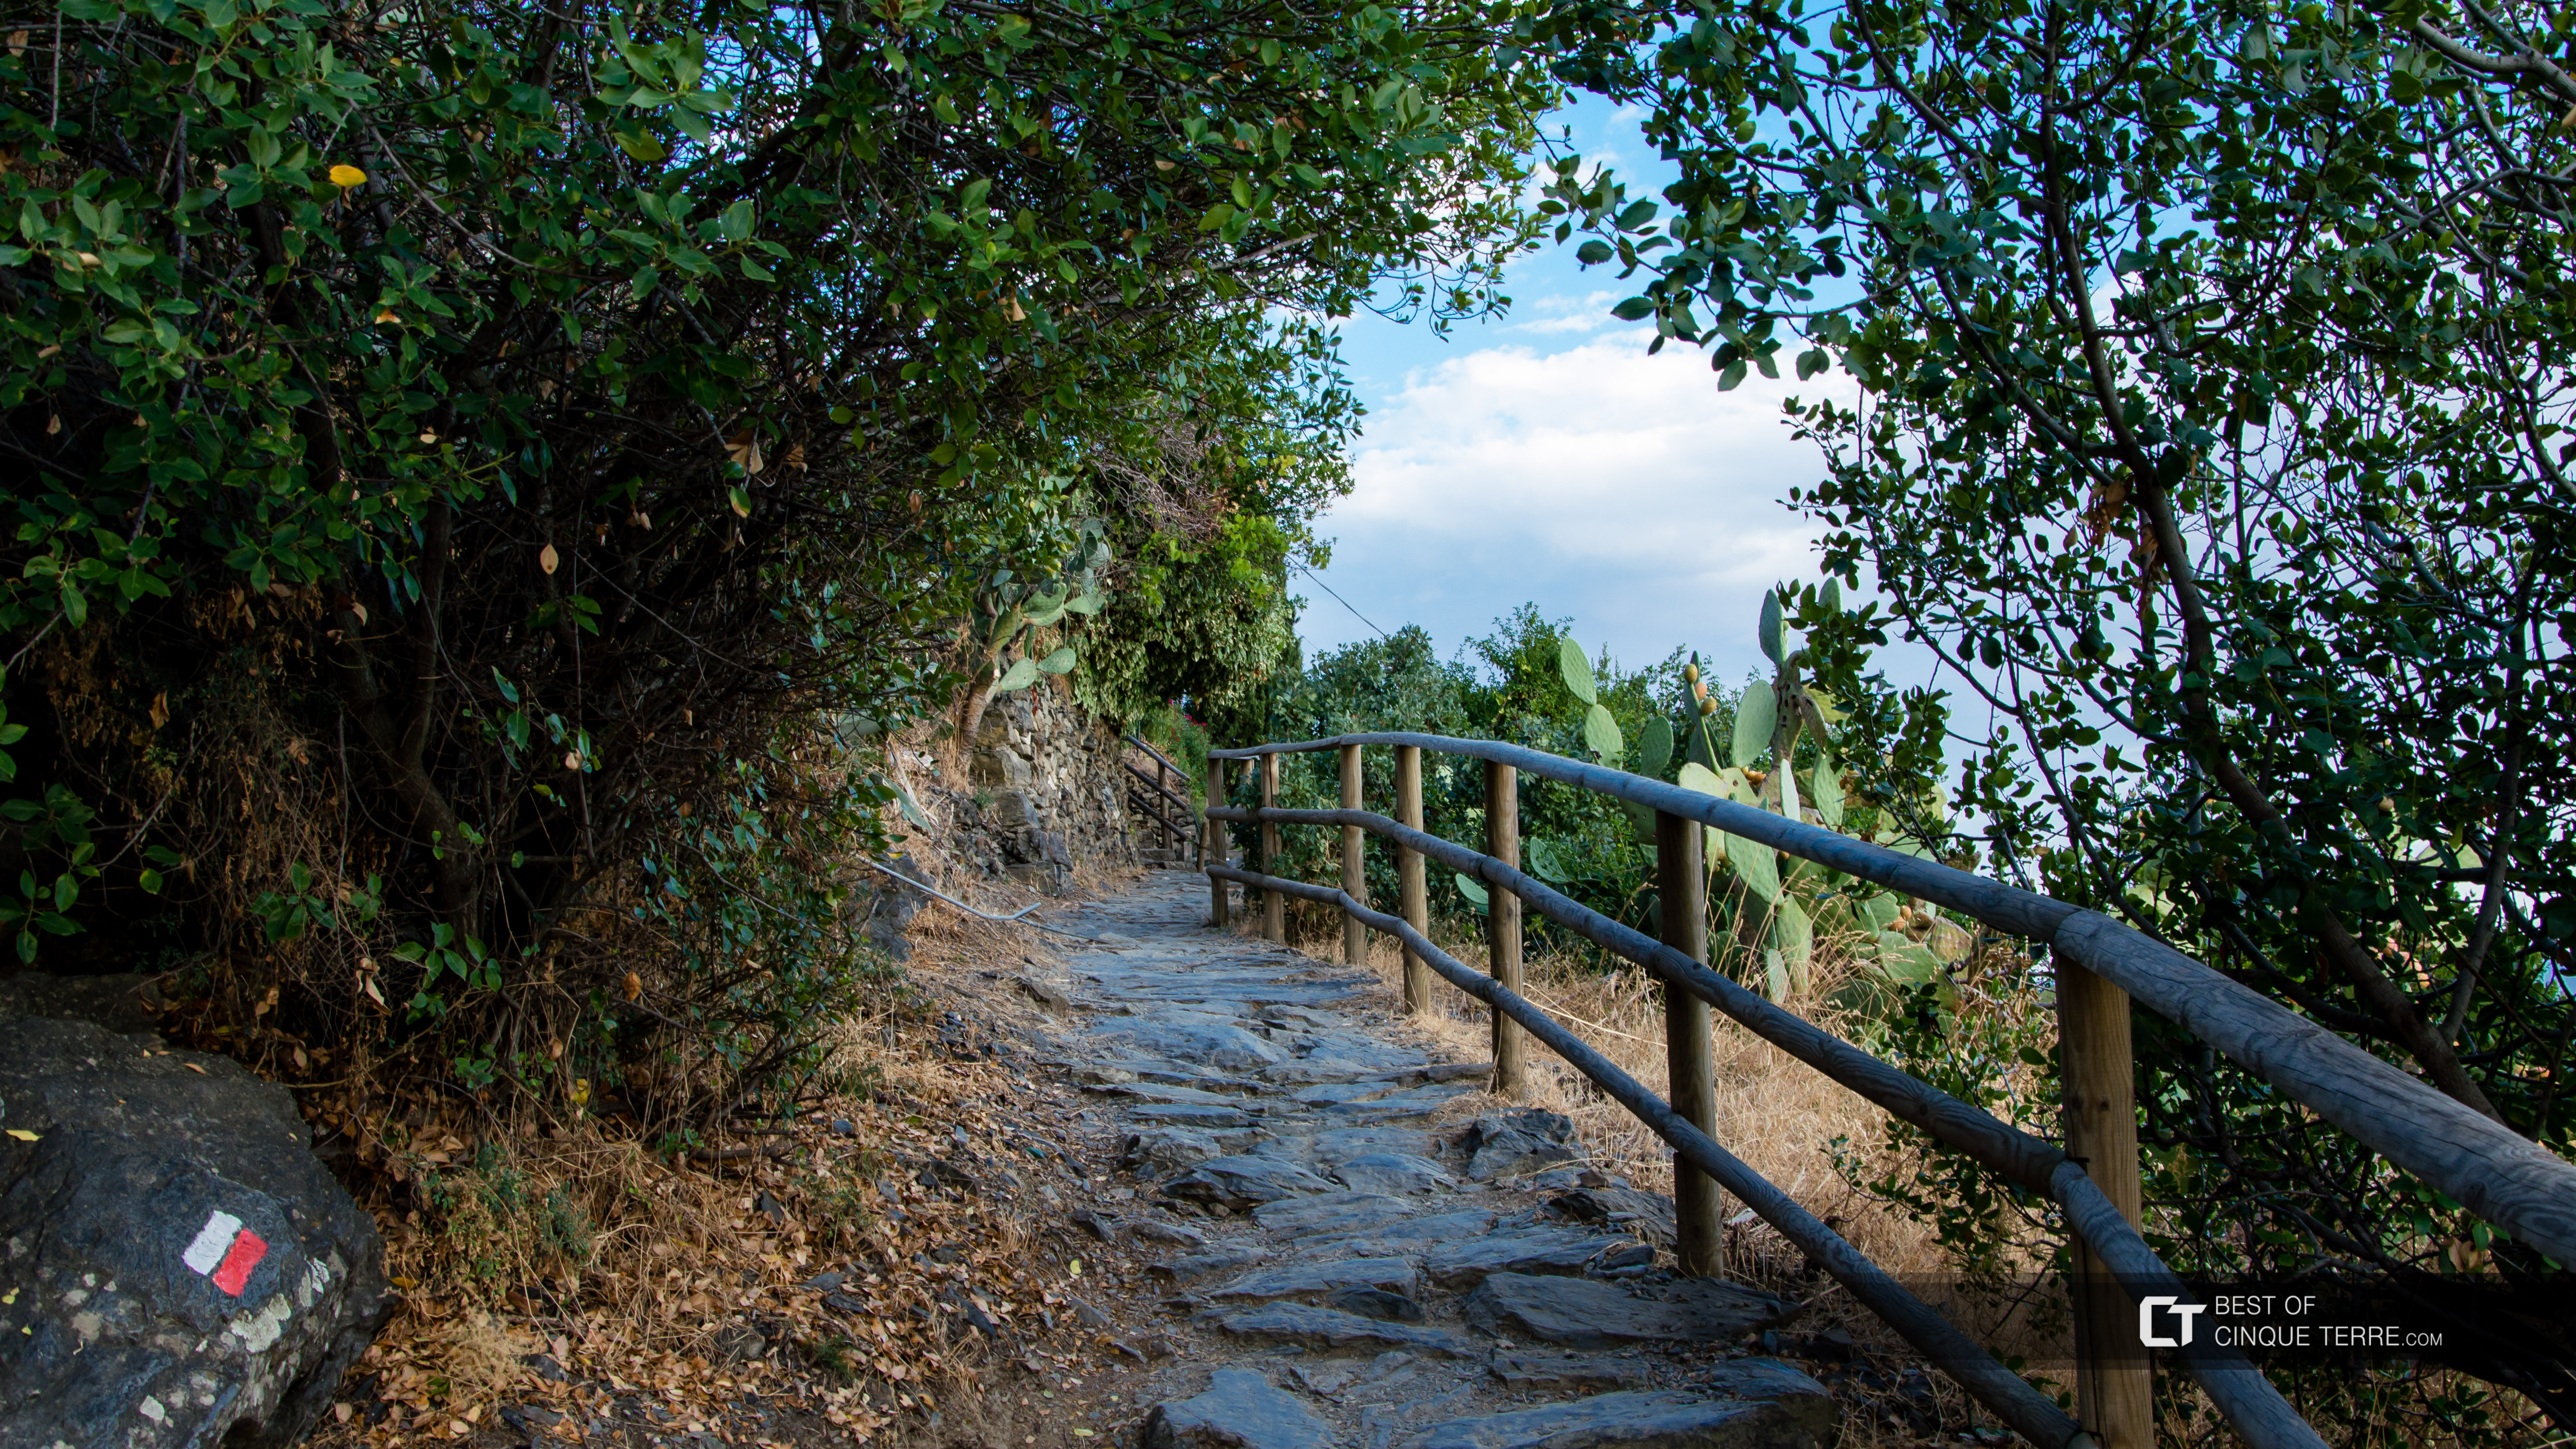 Lazurowa Ścieżka z Vernazzy do Cornigli, Trasy piesze, Cinque Terre, Włochy